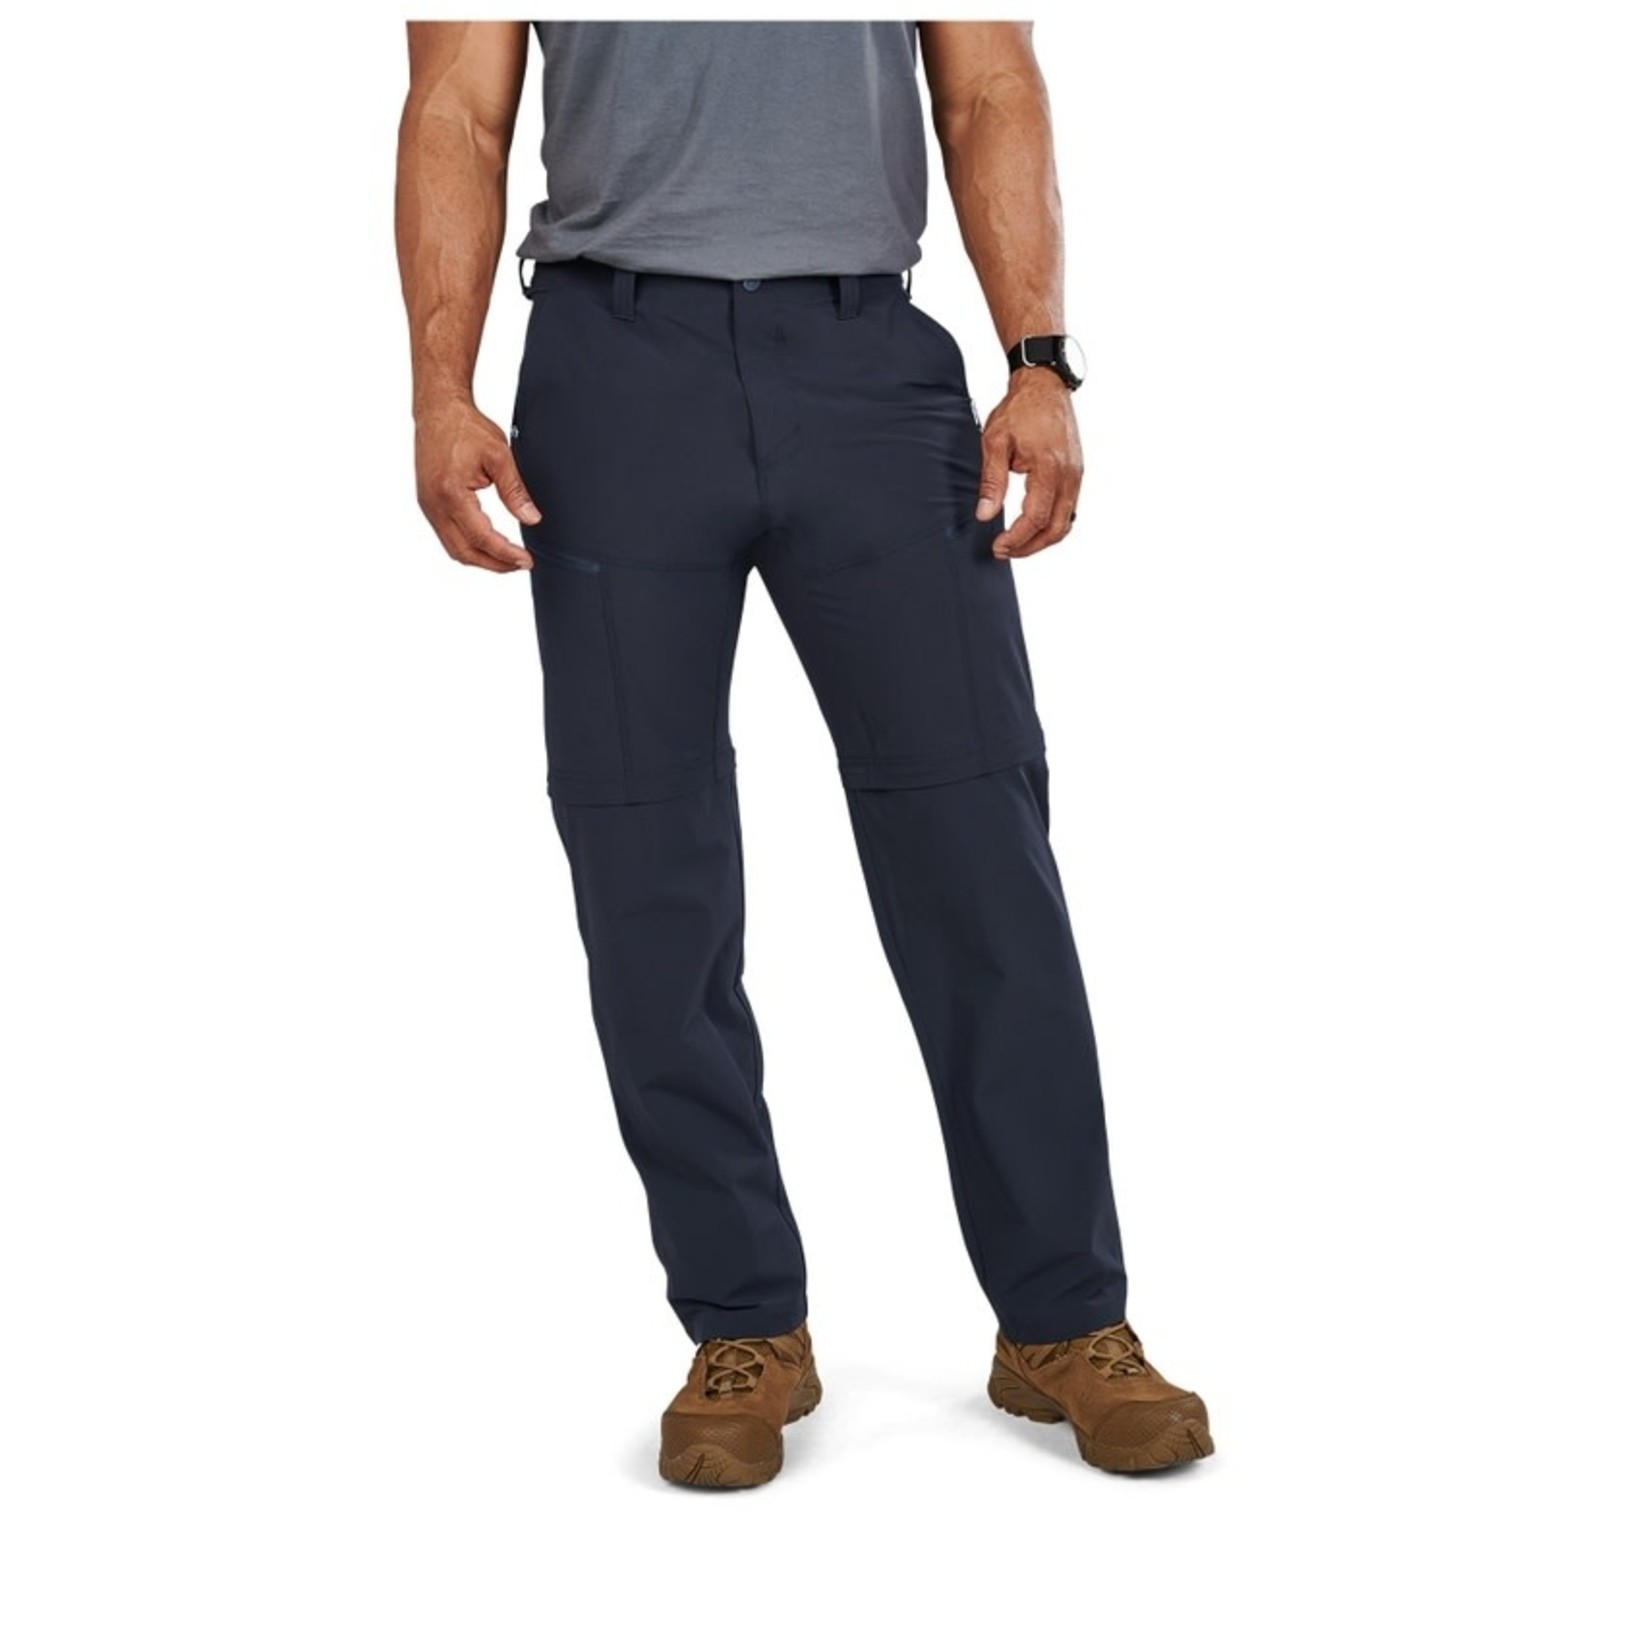 5.11 Tactical 5.11 Men's Decoy Convertible Pants